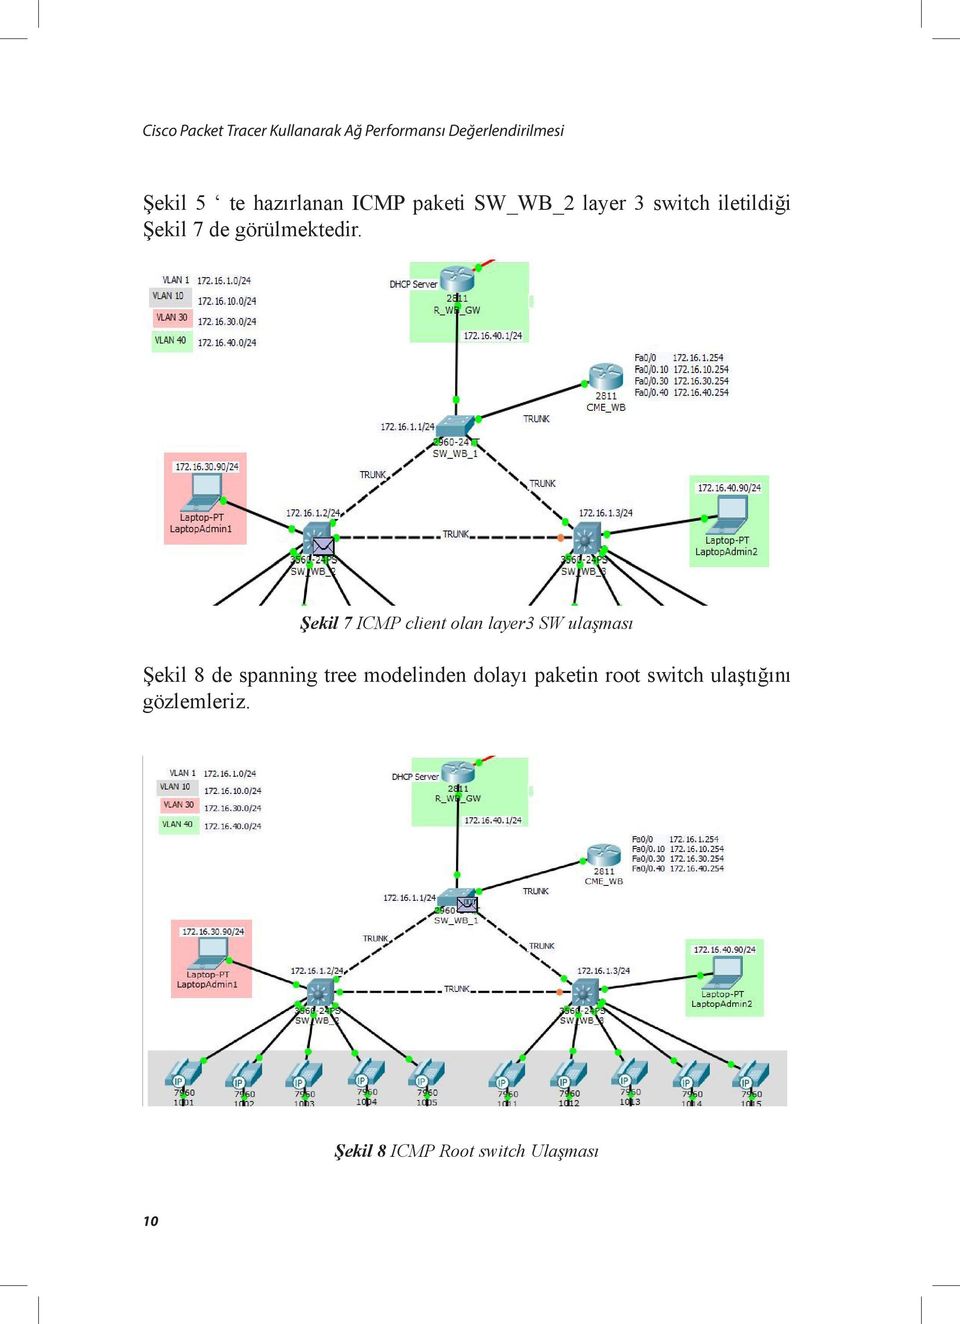 Şekil 7 ICMP client olan layer3 SW ulaşması Şekil 8 de spanning tree modelinden